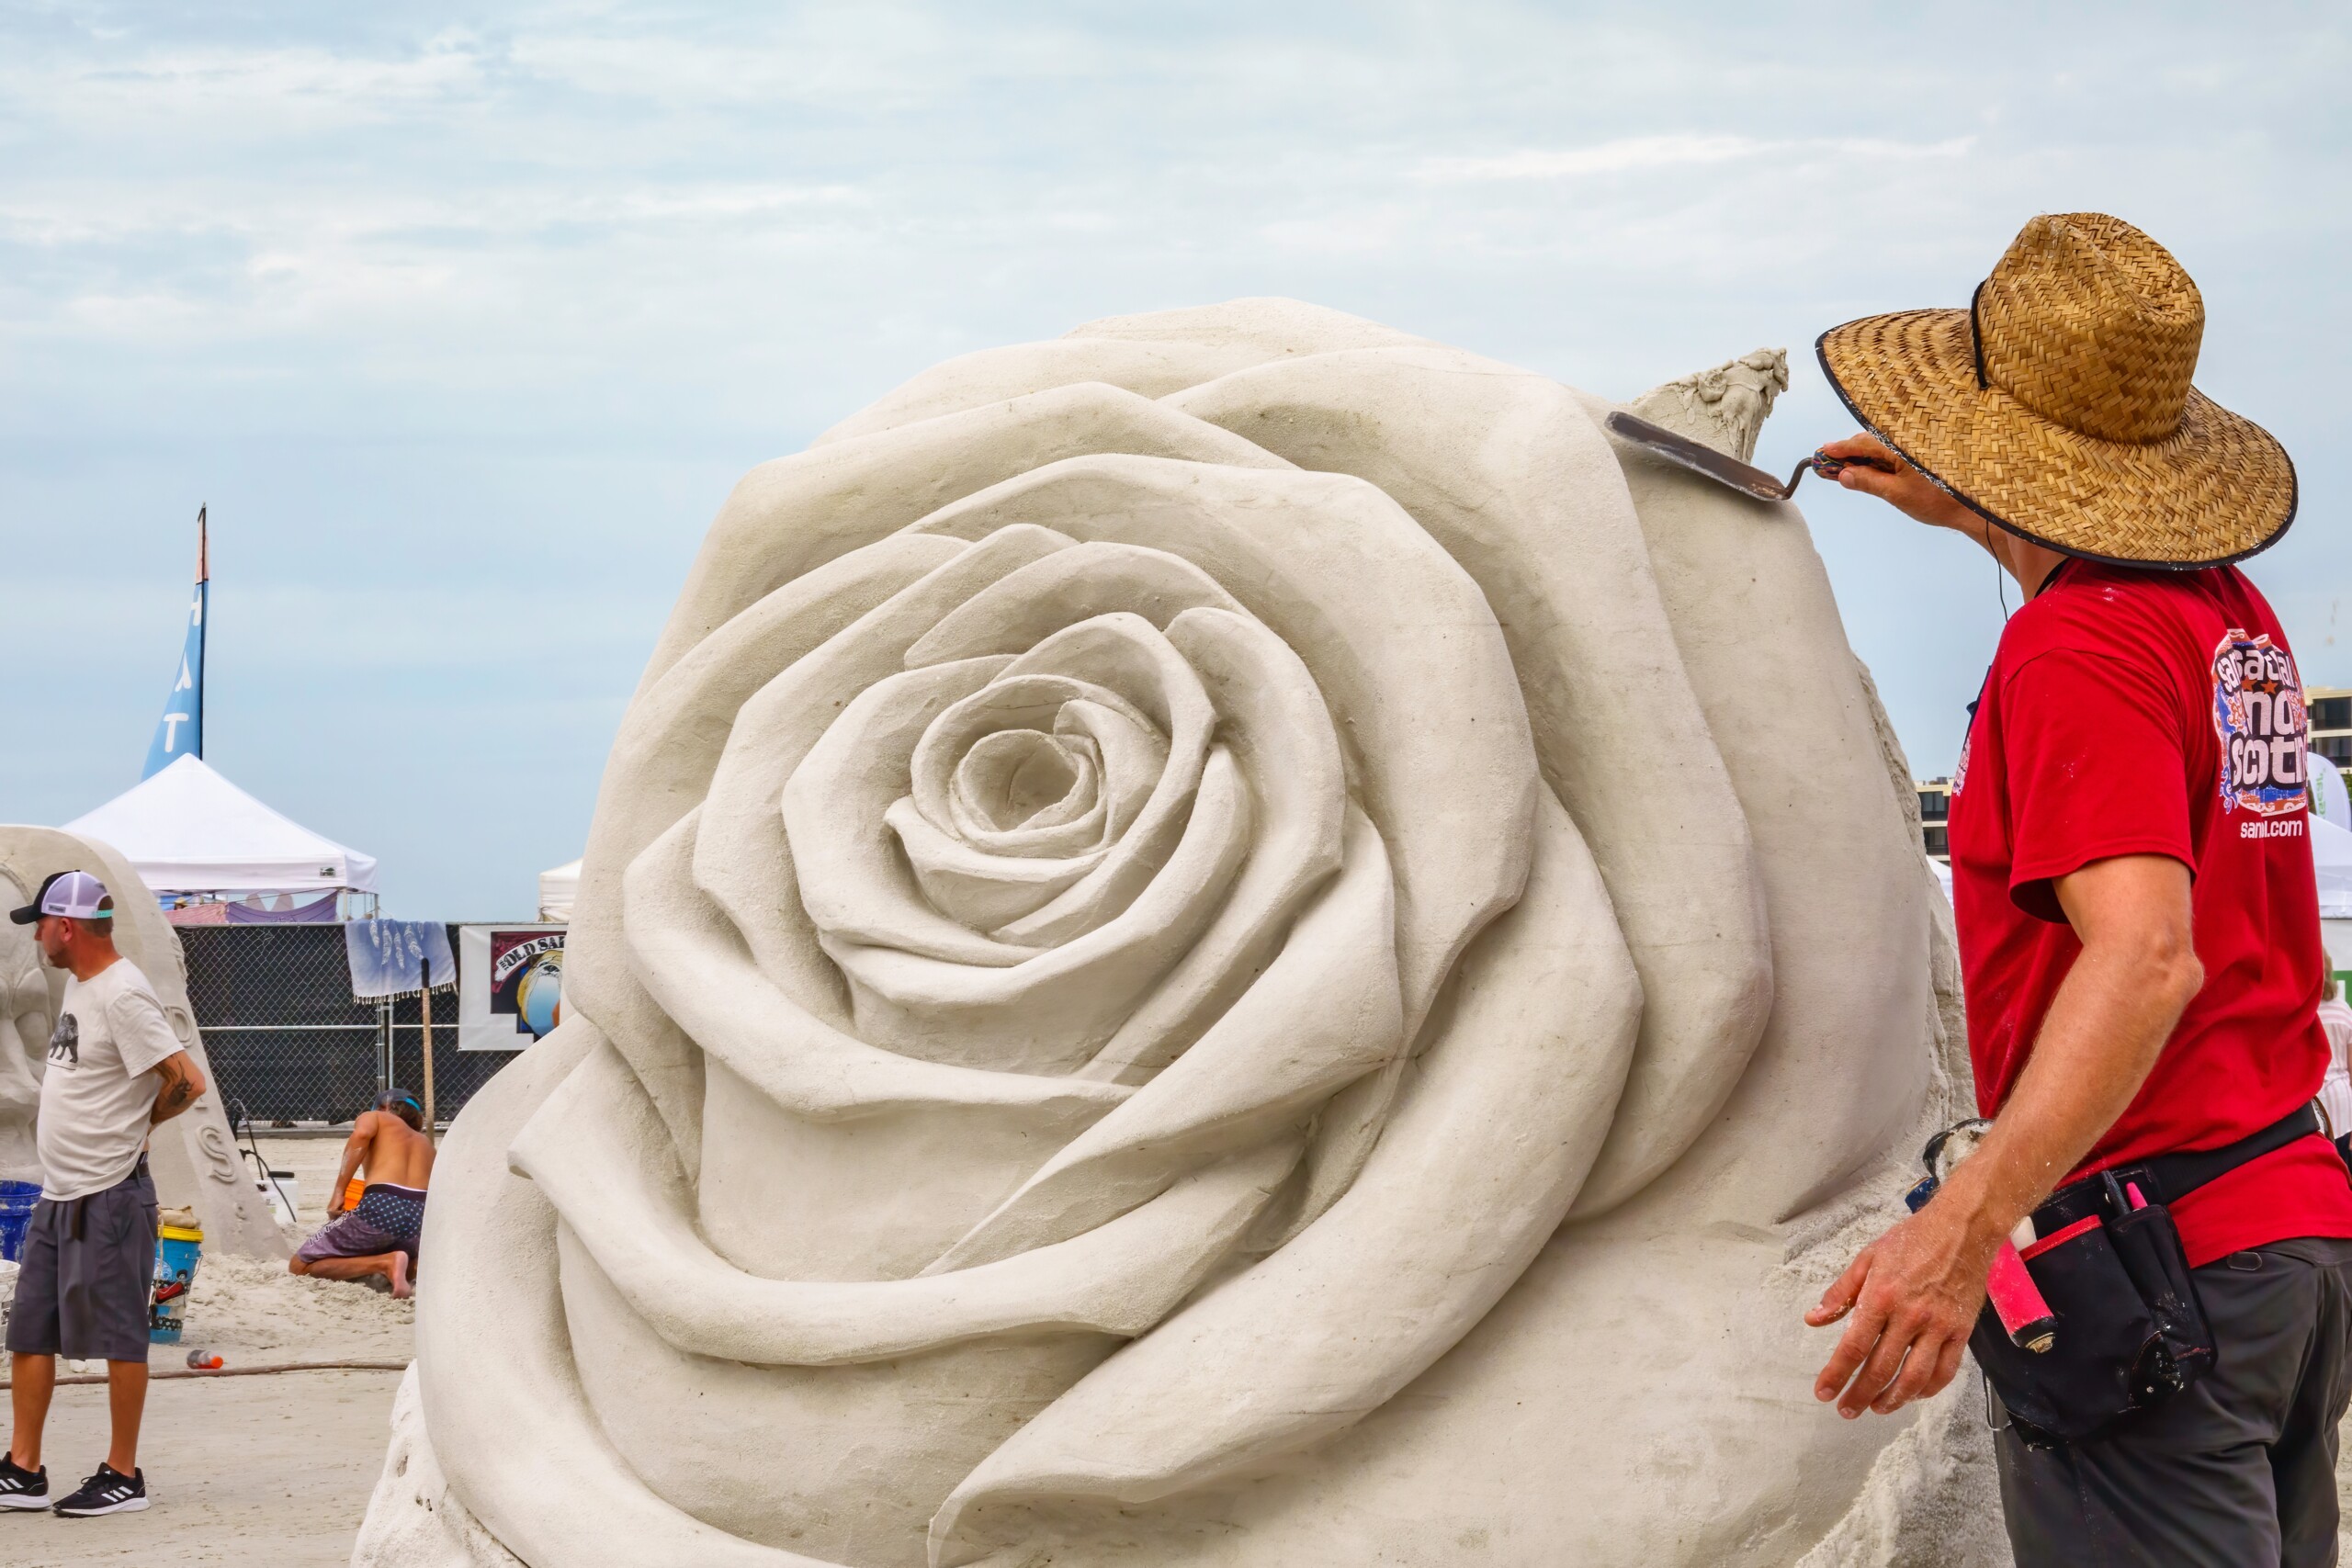 SARASOTA, FLORYDA, USA — LISTOPAD 12 października 2021: Artysta wygładza część rzeźby kwiatowej w toku Siesta Key Crystal Classic, międzynarodowy festiwal rzeźbienia w piasku na plaży Siesta Key.